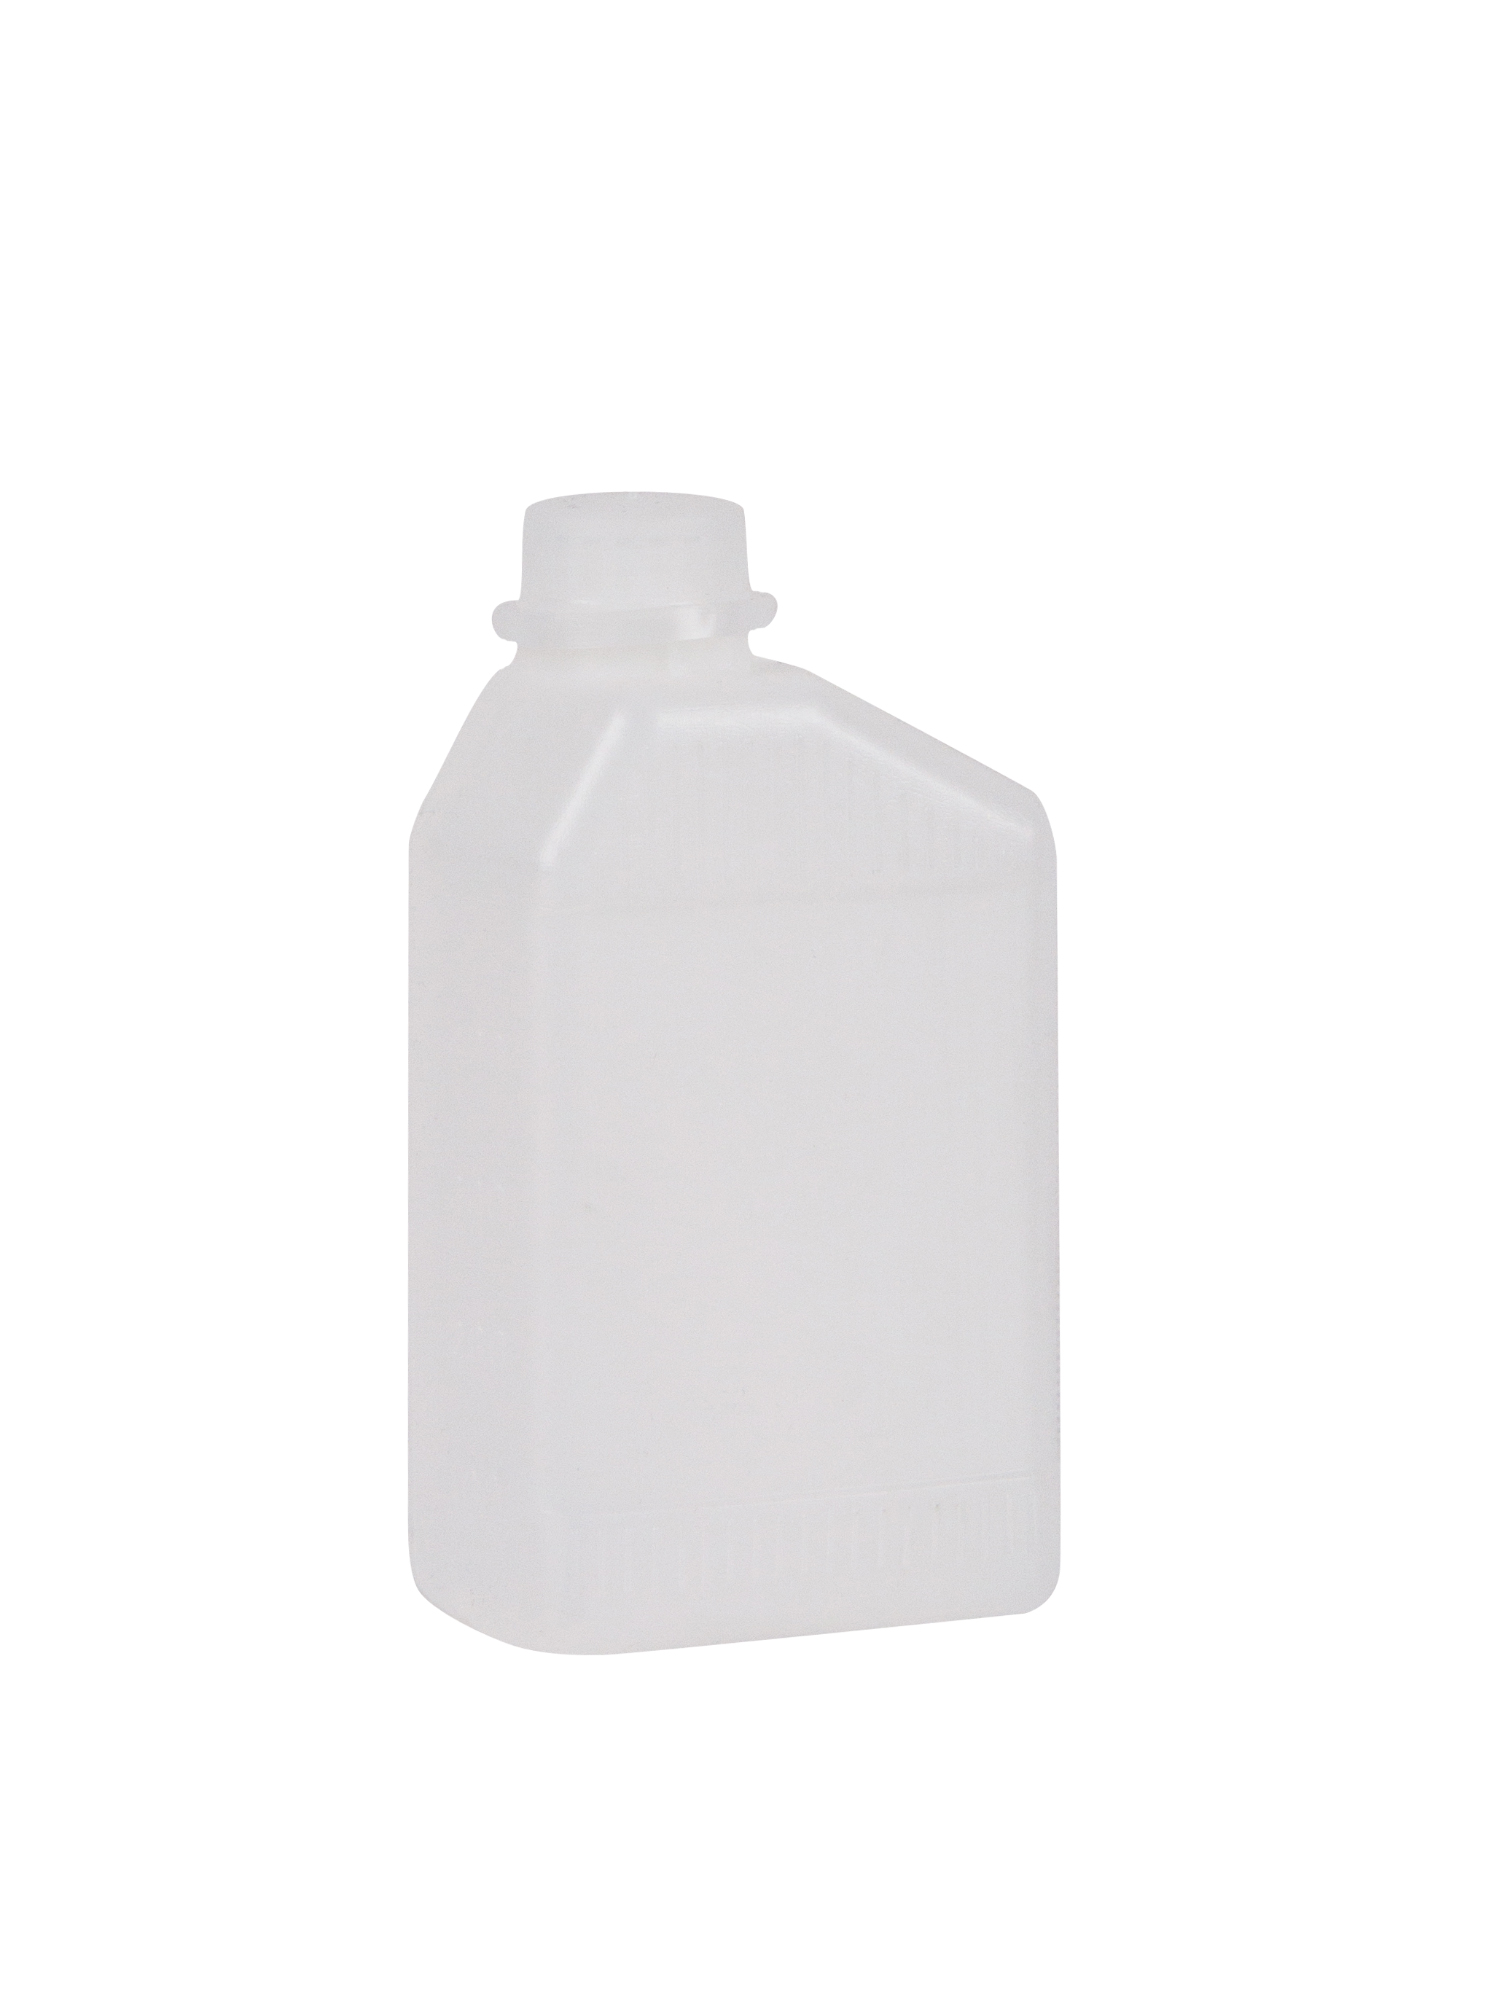 APP 250205 PP HDPE - Hilfsbehälter mit Skala, Verschluss, transparent 0,5 L | Plasteflasche Leerbehälter Kunststoffflasche